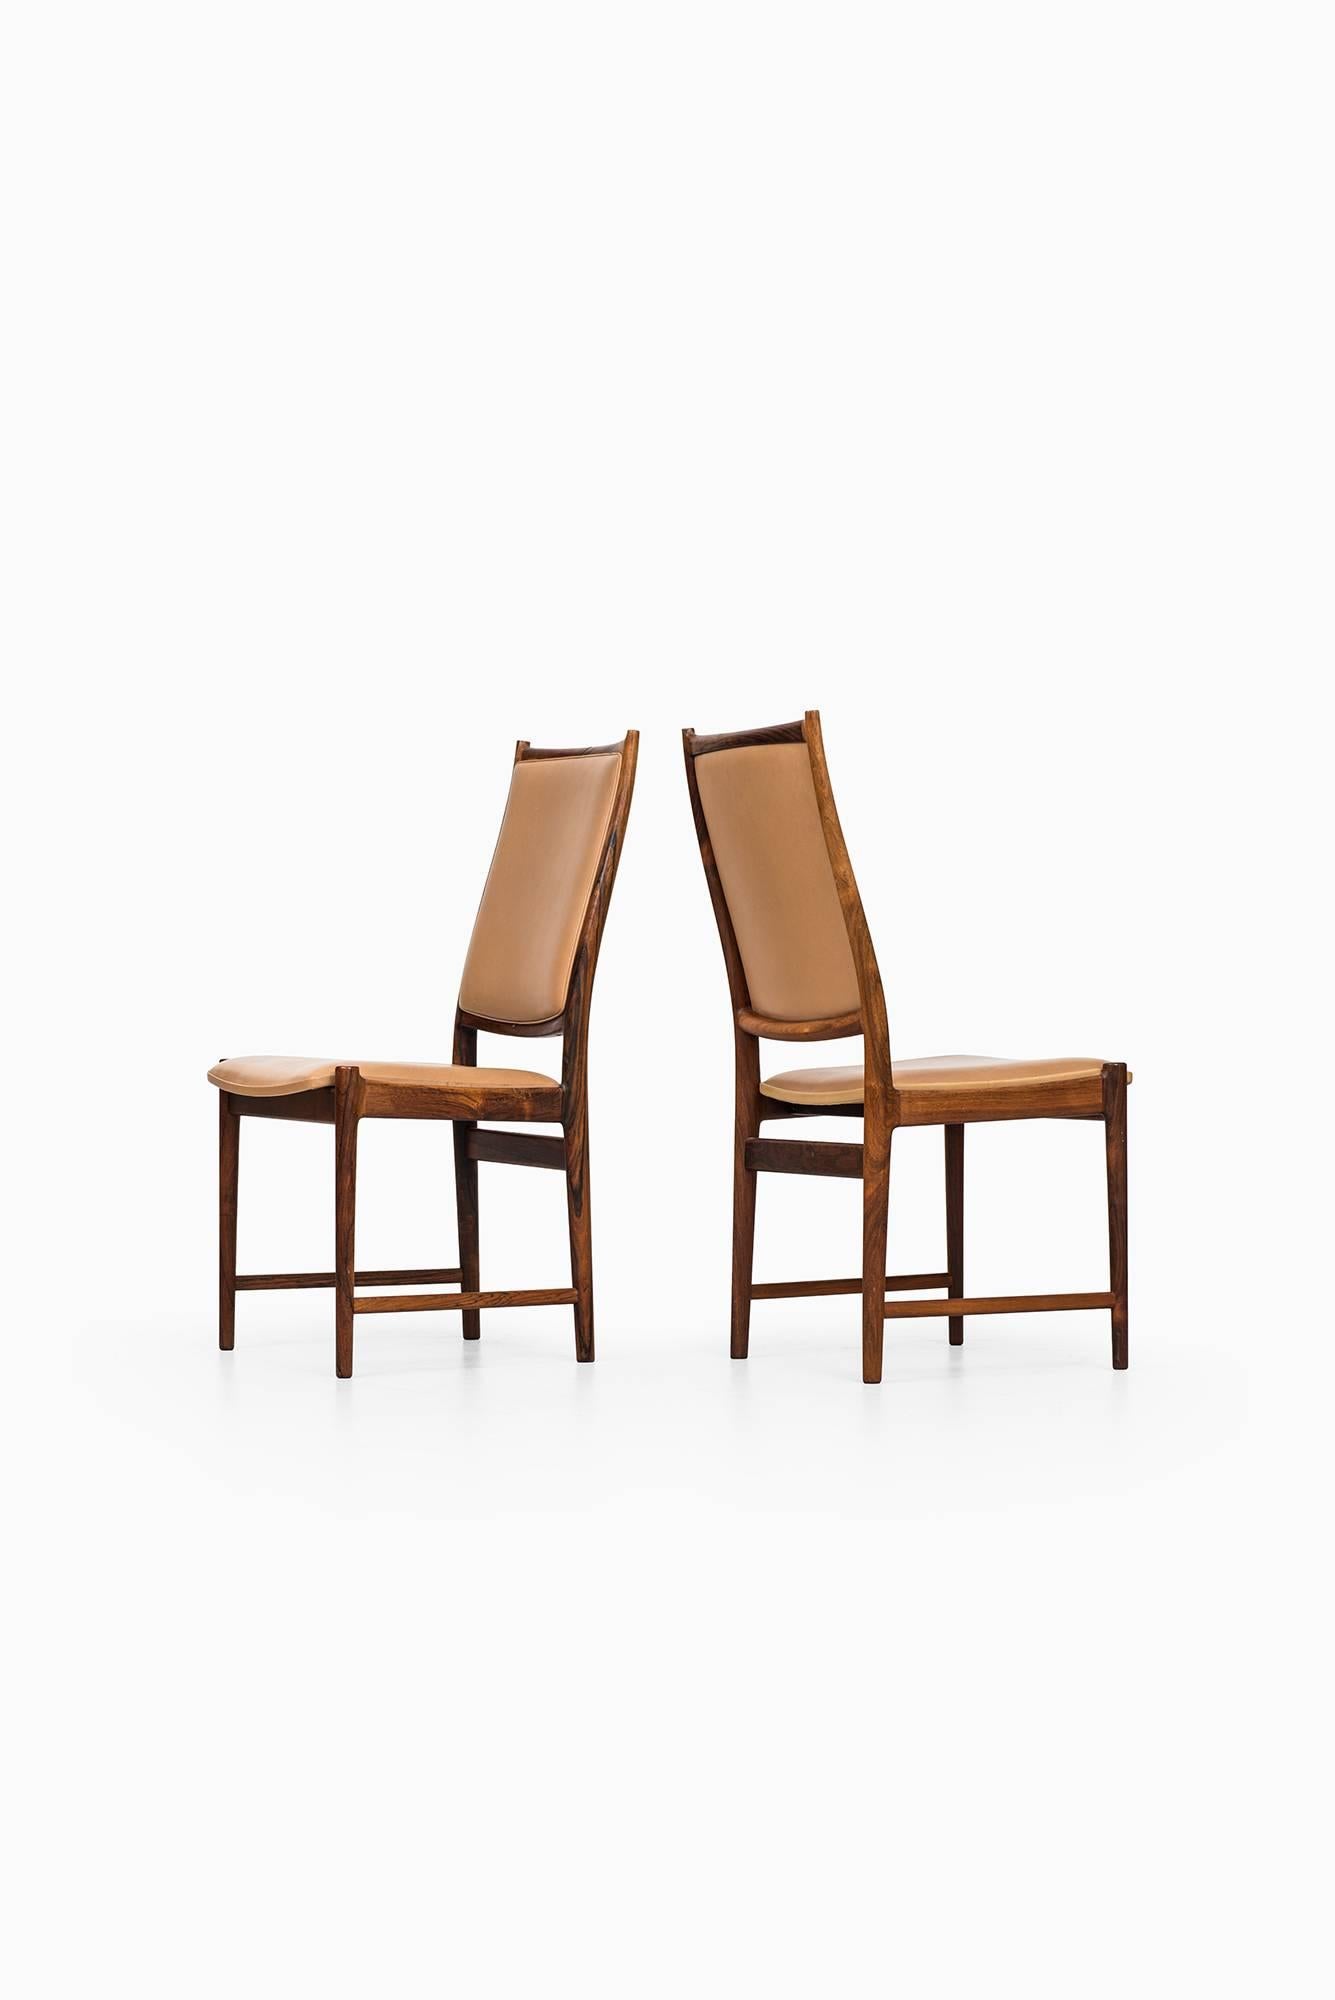 Scandinavian Modern Torbjørn Afdal High Back Dining Chairs Model Darby by Nesjestranda Møbelfabrik For Sale